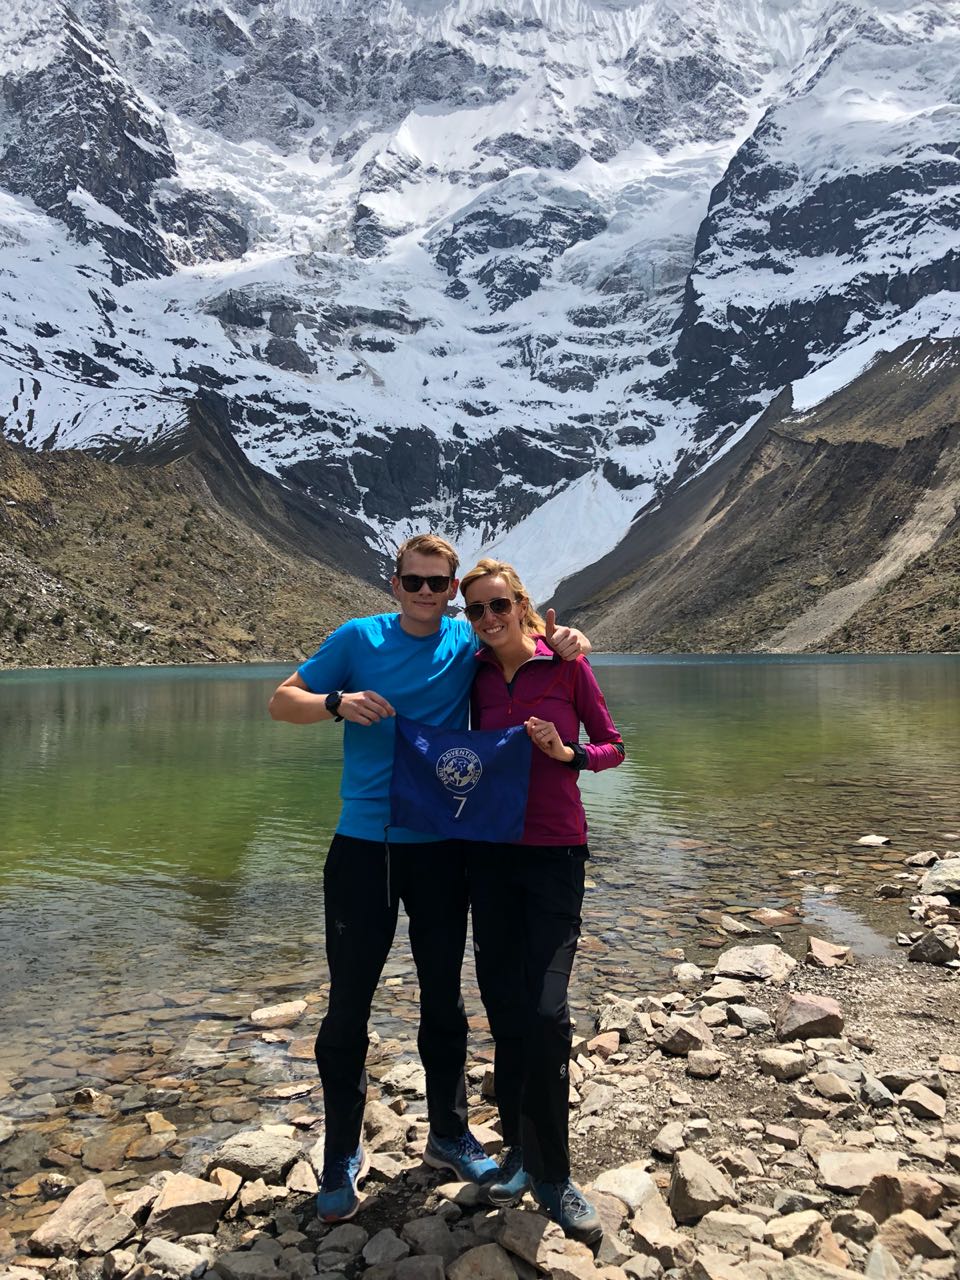 Peru Adventure Trek at Umantay Lake - My Peru Guide